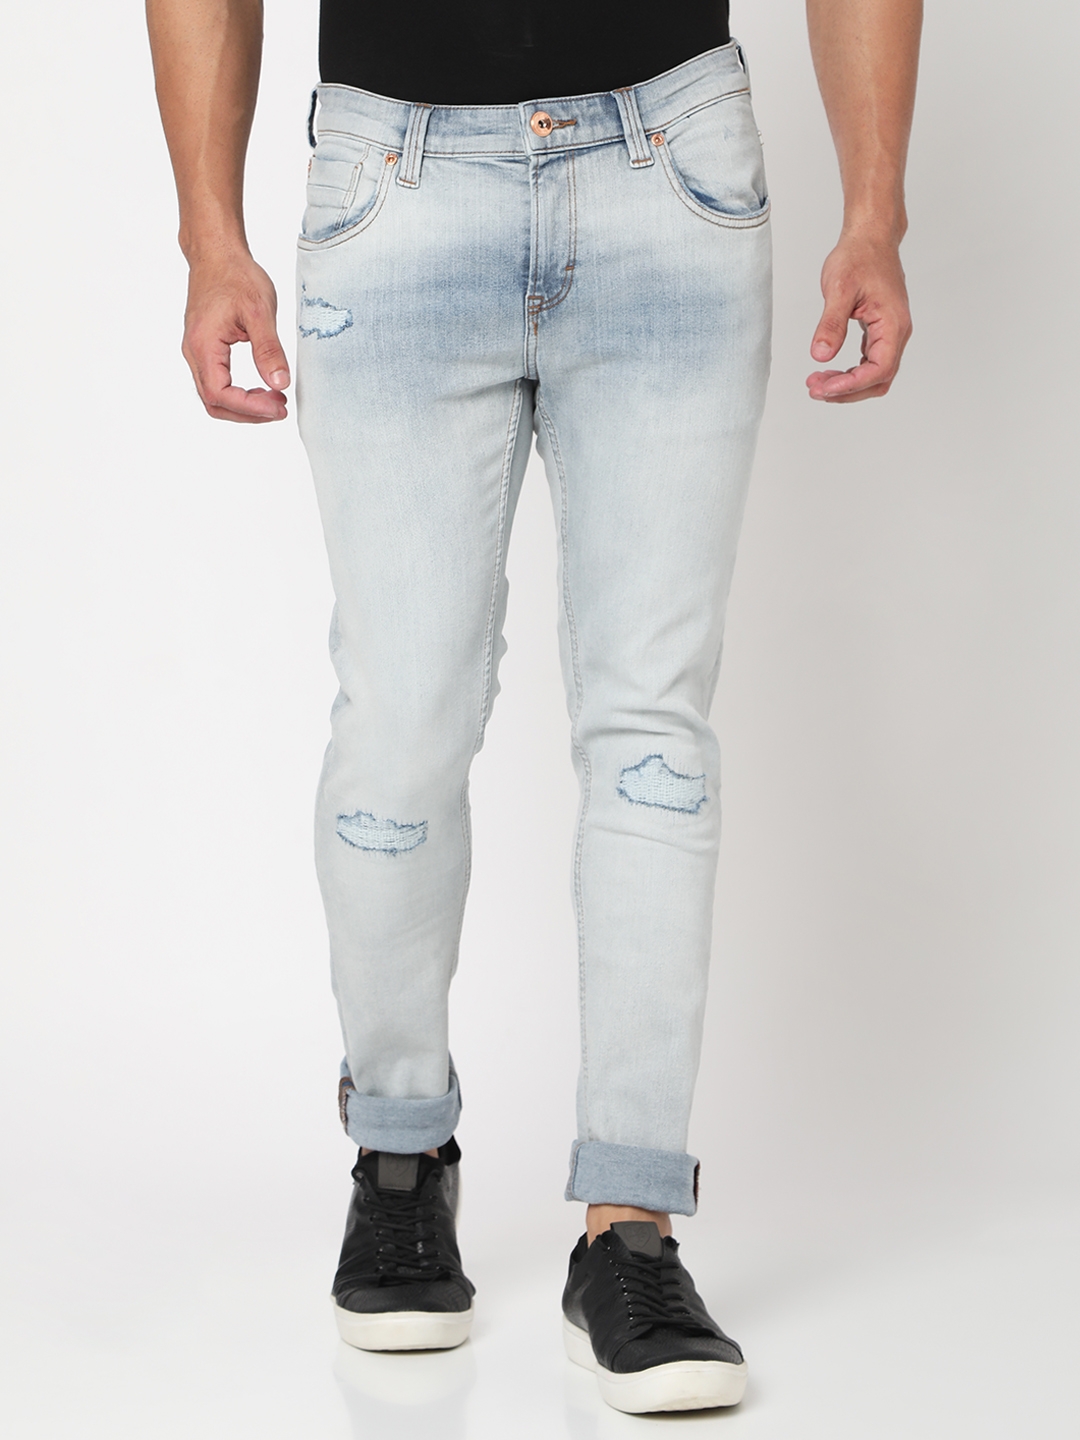 spykar | Men's Blue Cotton Blend Solid Jeans 0